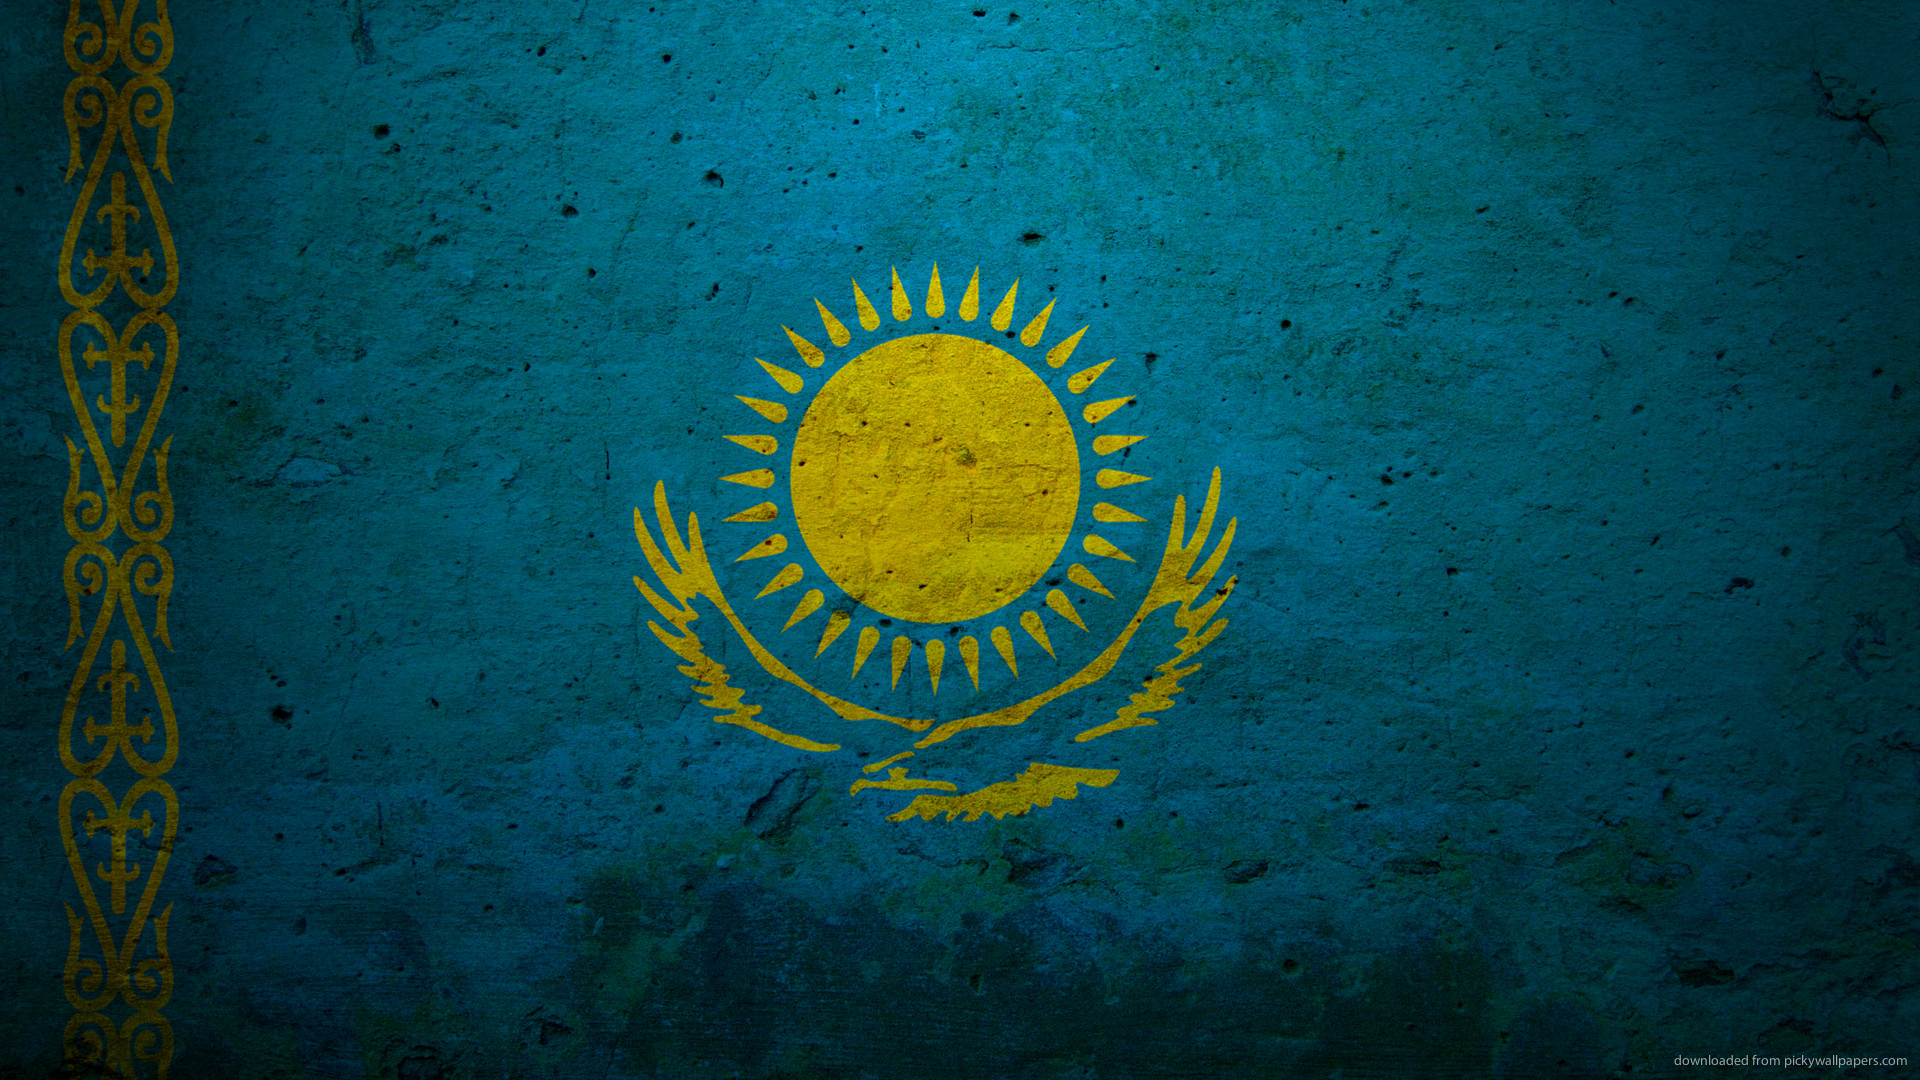 Популярные заставки и фоны Флаг Казахстана на компьютер